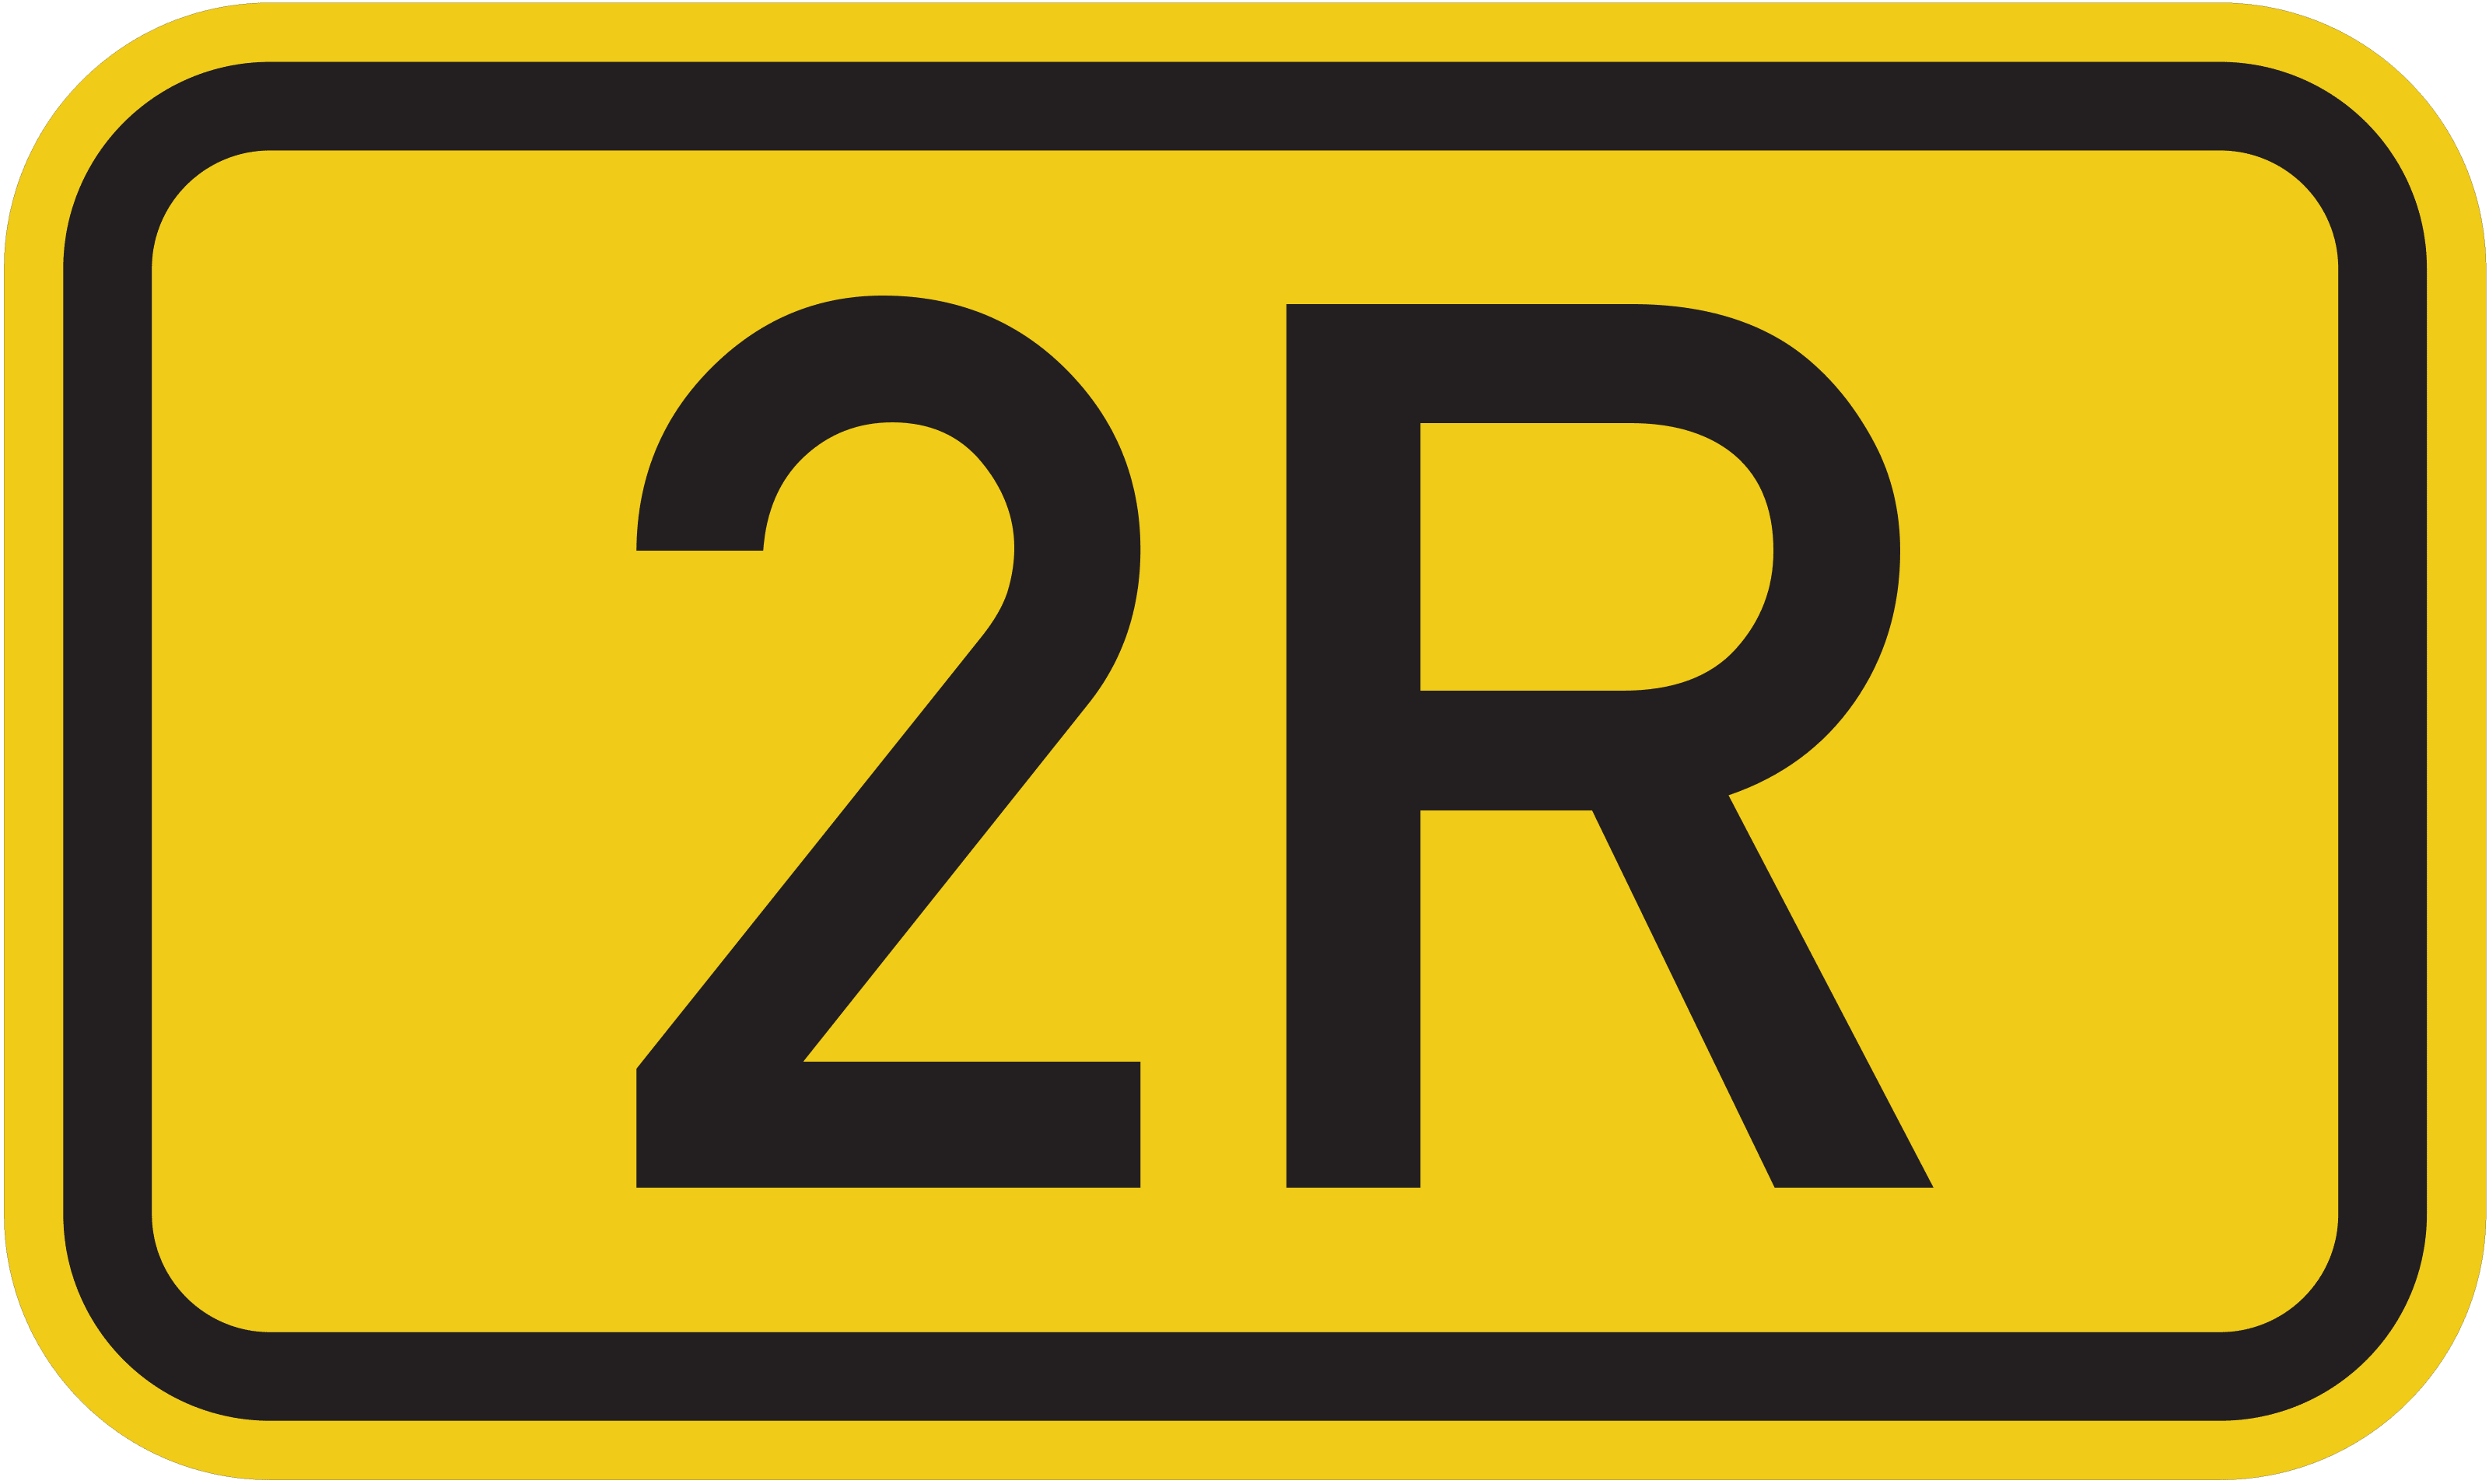 Bundesstraße B 2R